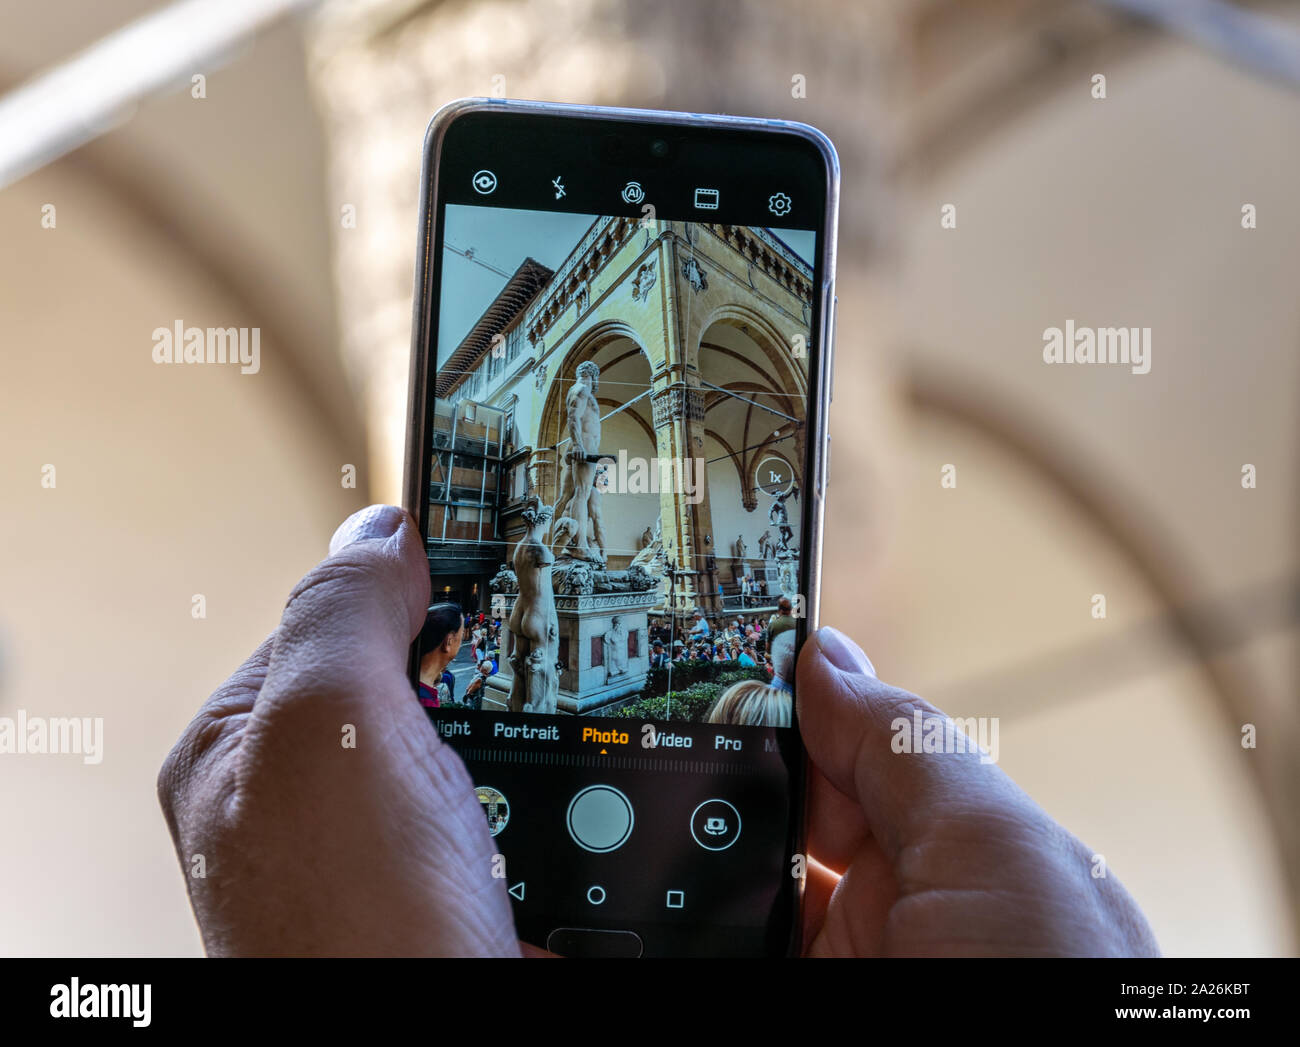 Un écran de téléphone mobile avec le photographe de prendre une photo de la statue de Baccio Bandinelli's Hercules dans la Piazza della Signoria, Florence, Italie Banque D'Images